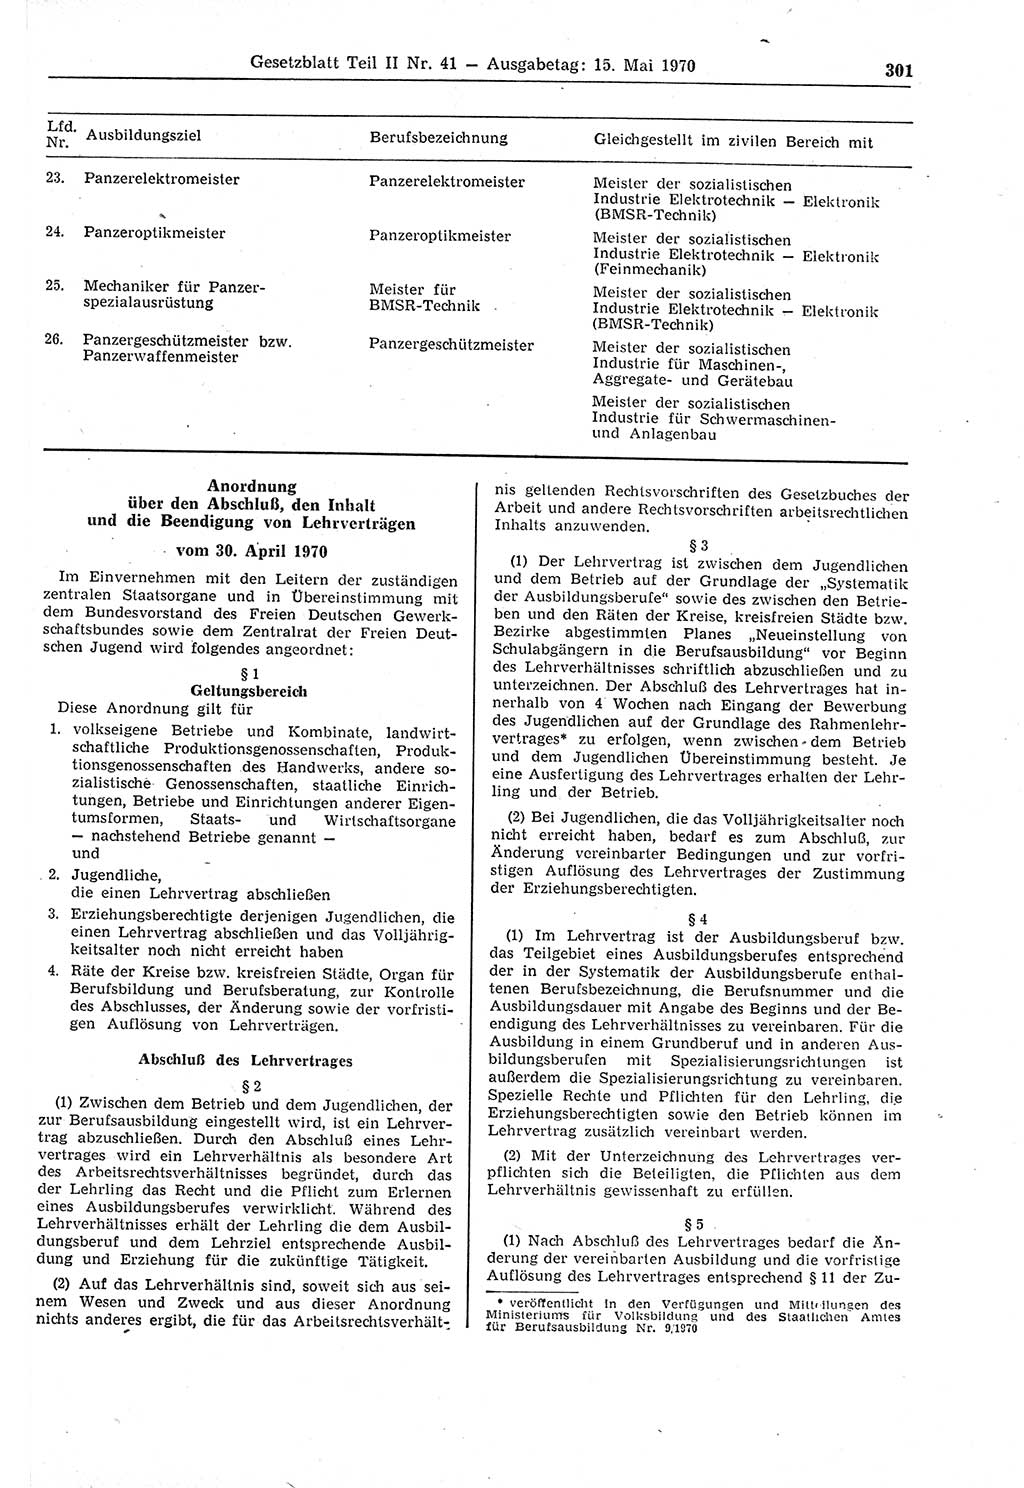 Gesetzblatt (GBl.) der Deutschen Demokratischen Republik (DDR) Teil ⅠⅠ 1970, Seite 301 (GBl. DDR ⅠⅠ 1970, S. 301)